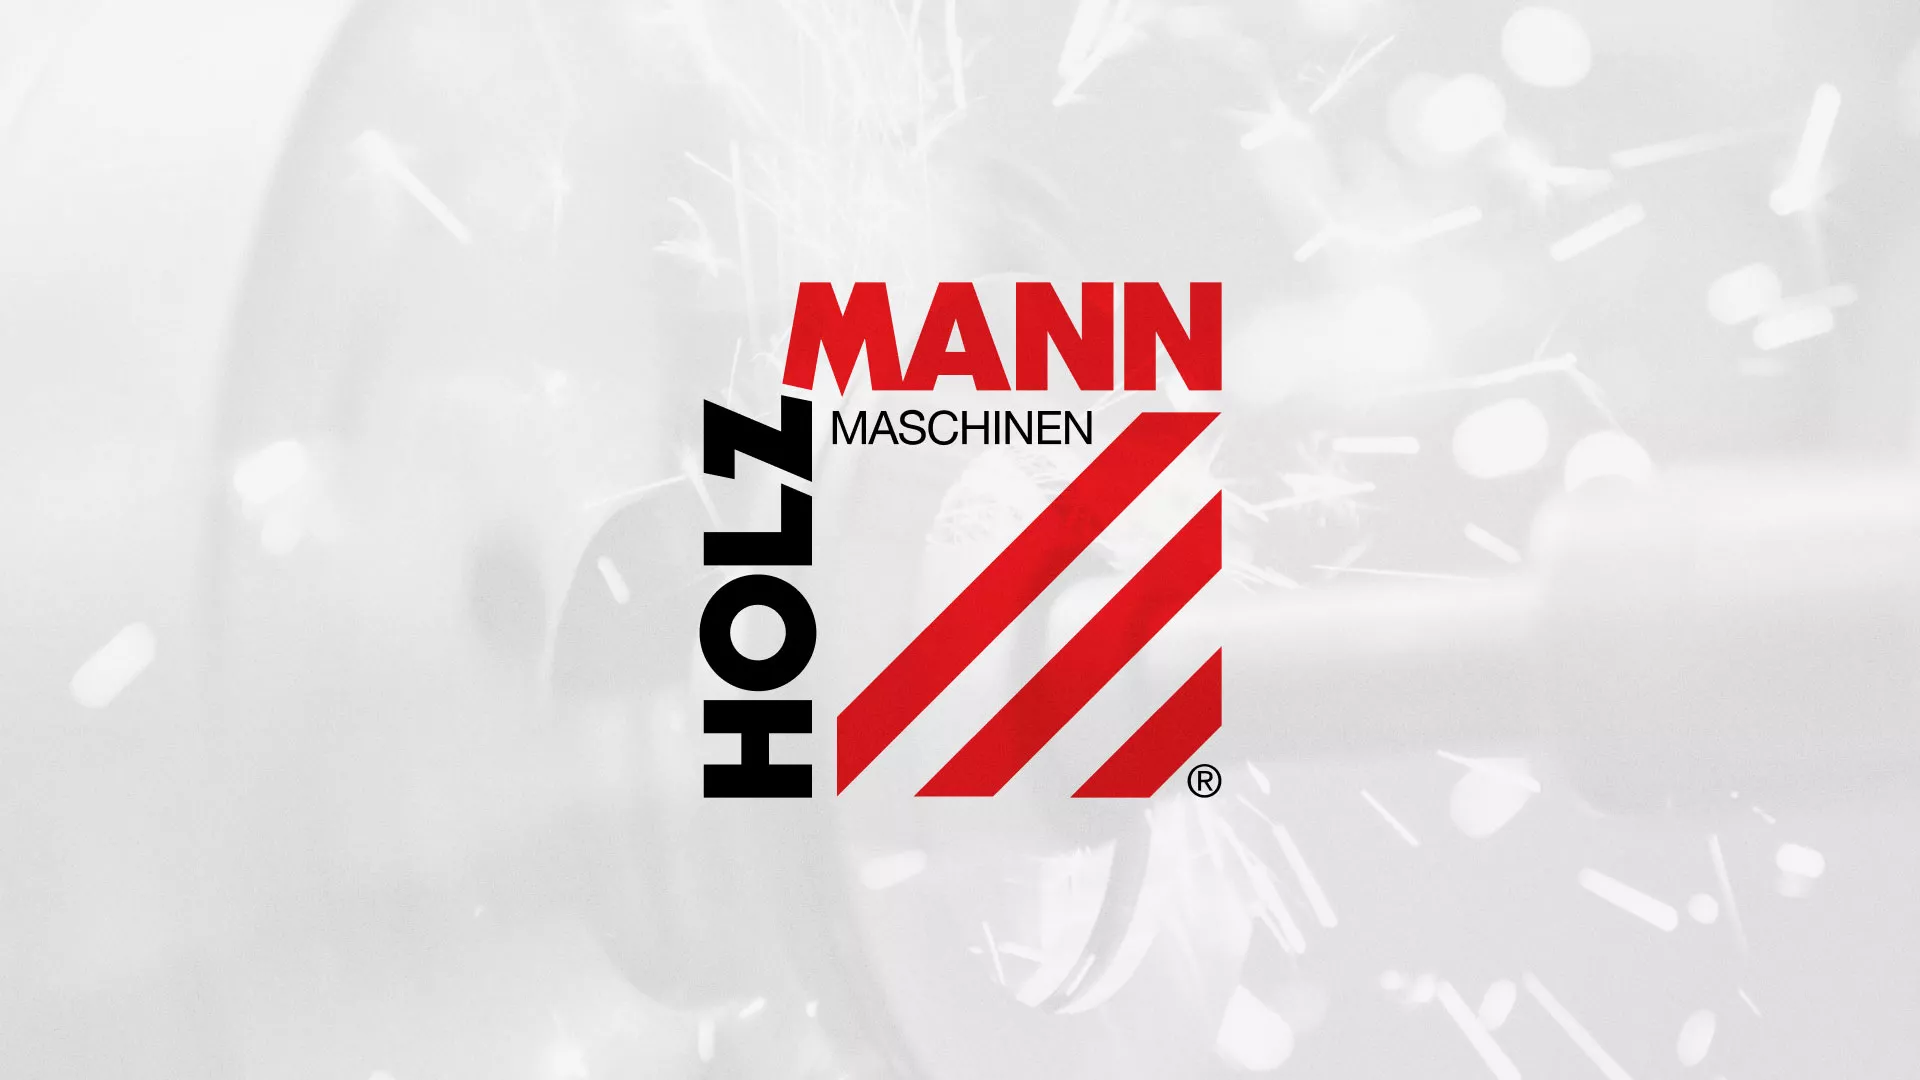 Создание сайта компании «HOLZMANN Maschinen GmbH» в Переславле-Залесском